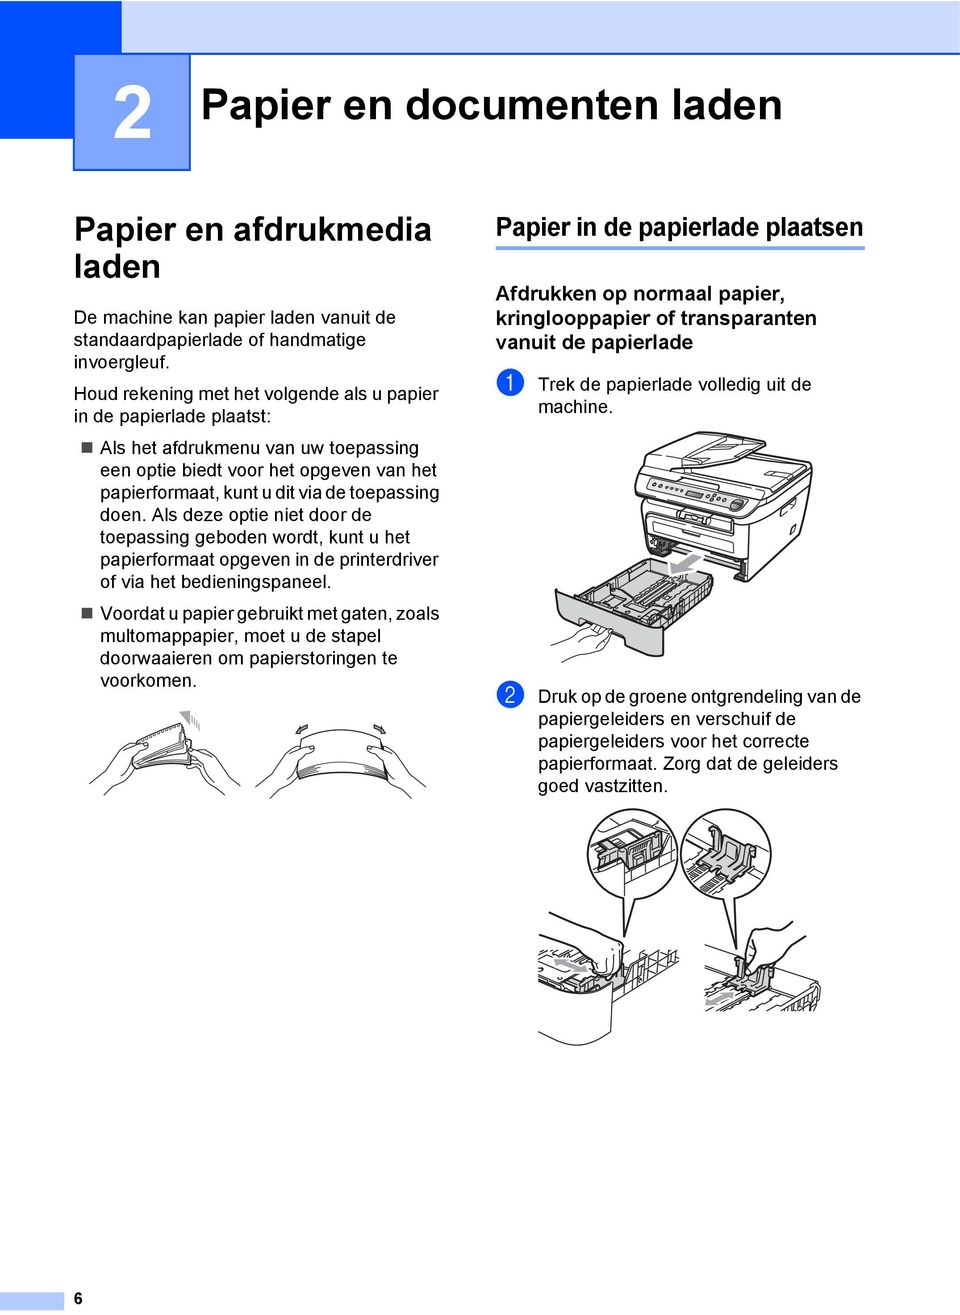 Als deze optie niet door de toepassing geboden wordt, kunt u het papierformaat opgeven in de printerdriver of via het bedieningspaneel.